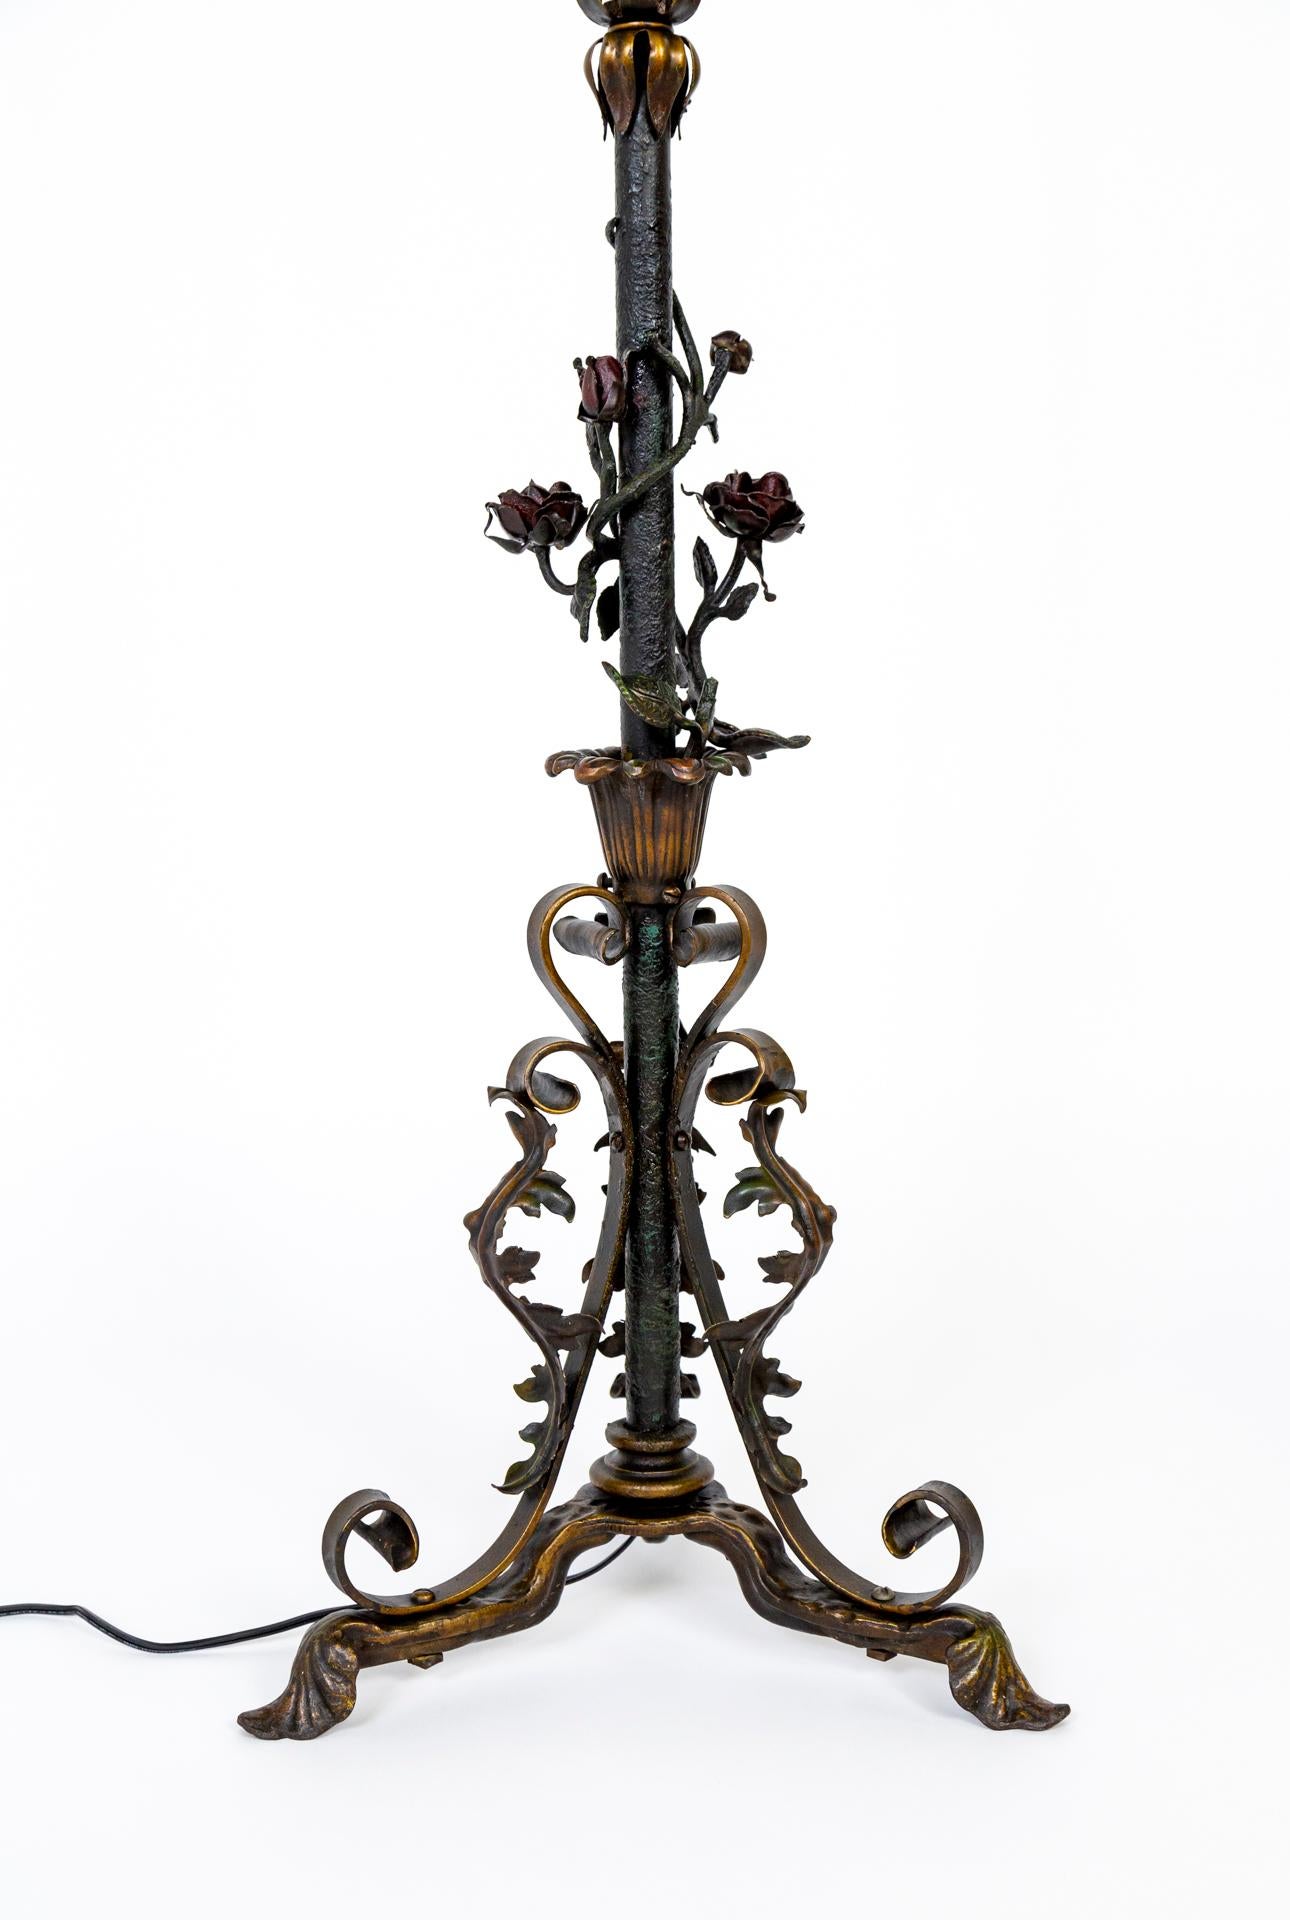 Lampadaire en fer noir orné, datant de la fin du XIXe siècle, avec trois pieds se rétrécissant en une tige ornée de roses, de feuilles et de volutes ; subtilement teinté en rouge, bronze et vert. Les éléments de conception sont moulés et forgés avec